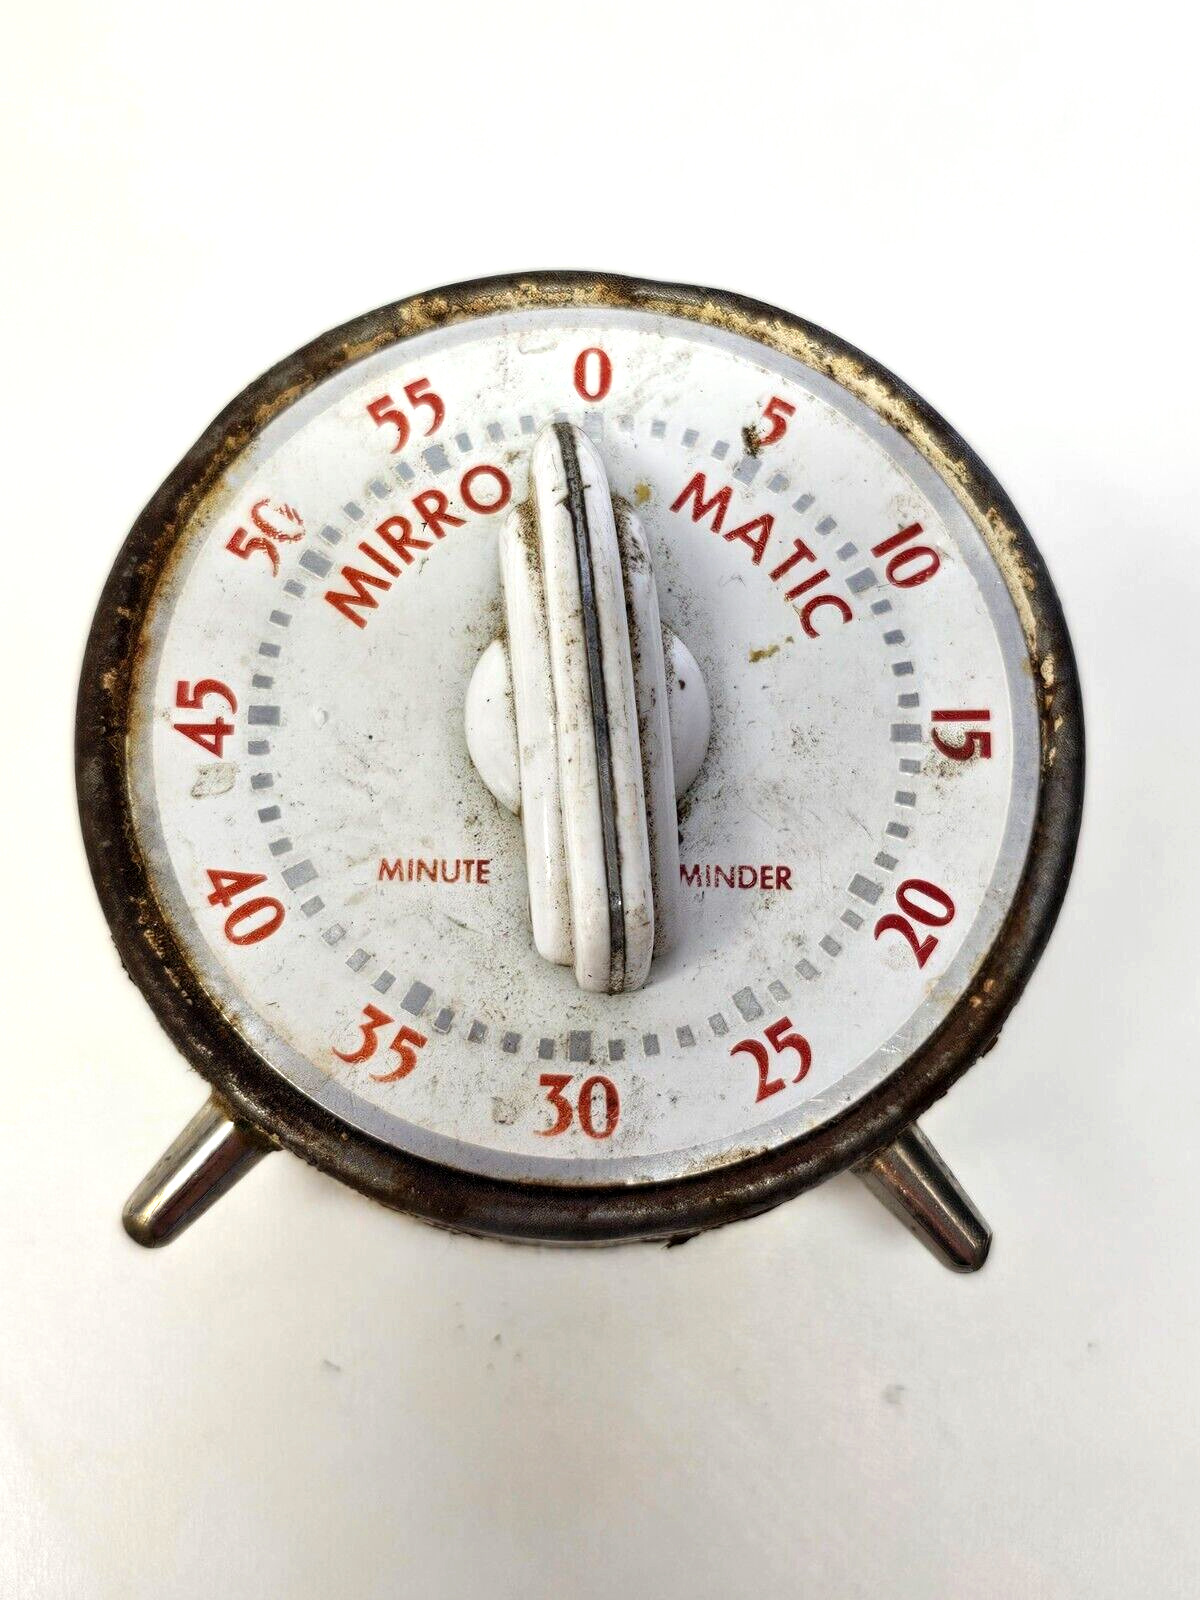 Vintage 1940s MIRRO-MATIC MINUTE MINDER Kitchen Timer - Lux Clock Mfg.